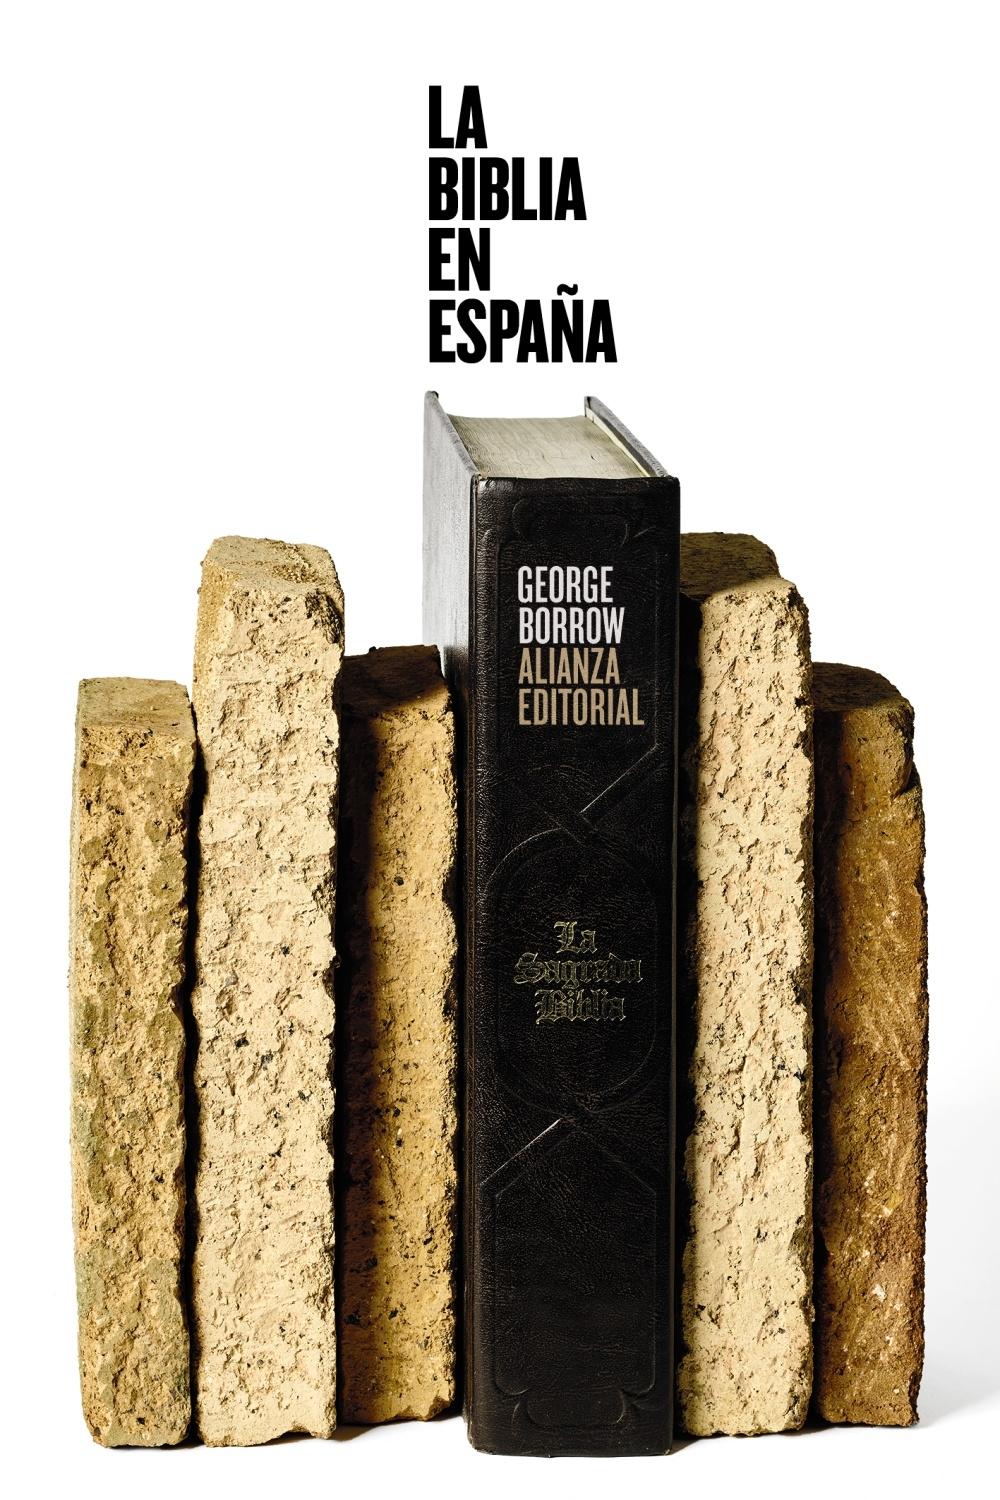 La Biblia en España "Viajes, aventuras y prisiones de un inglés en su intento de difundir las"